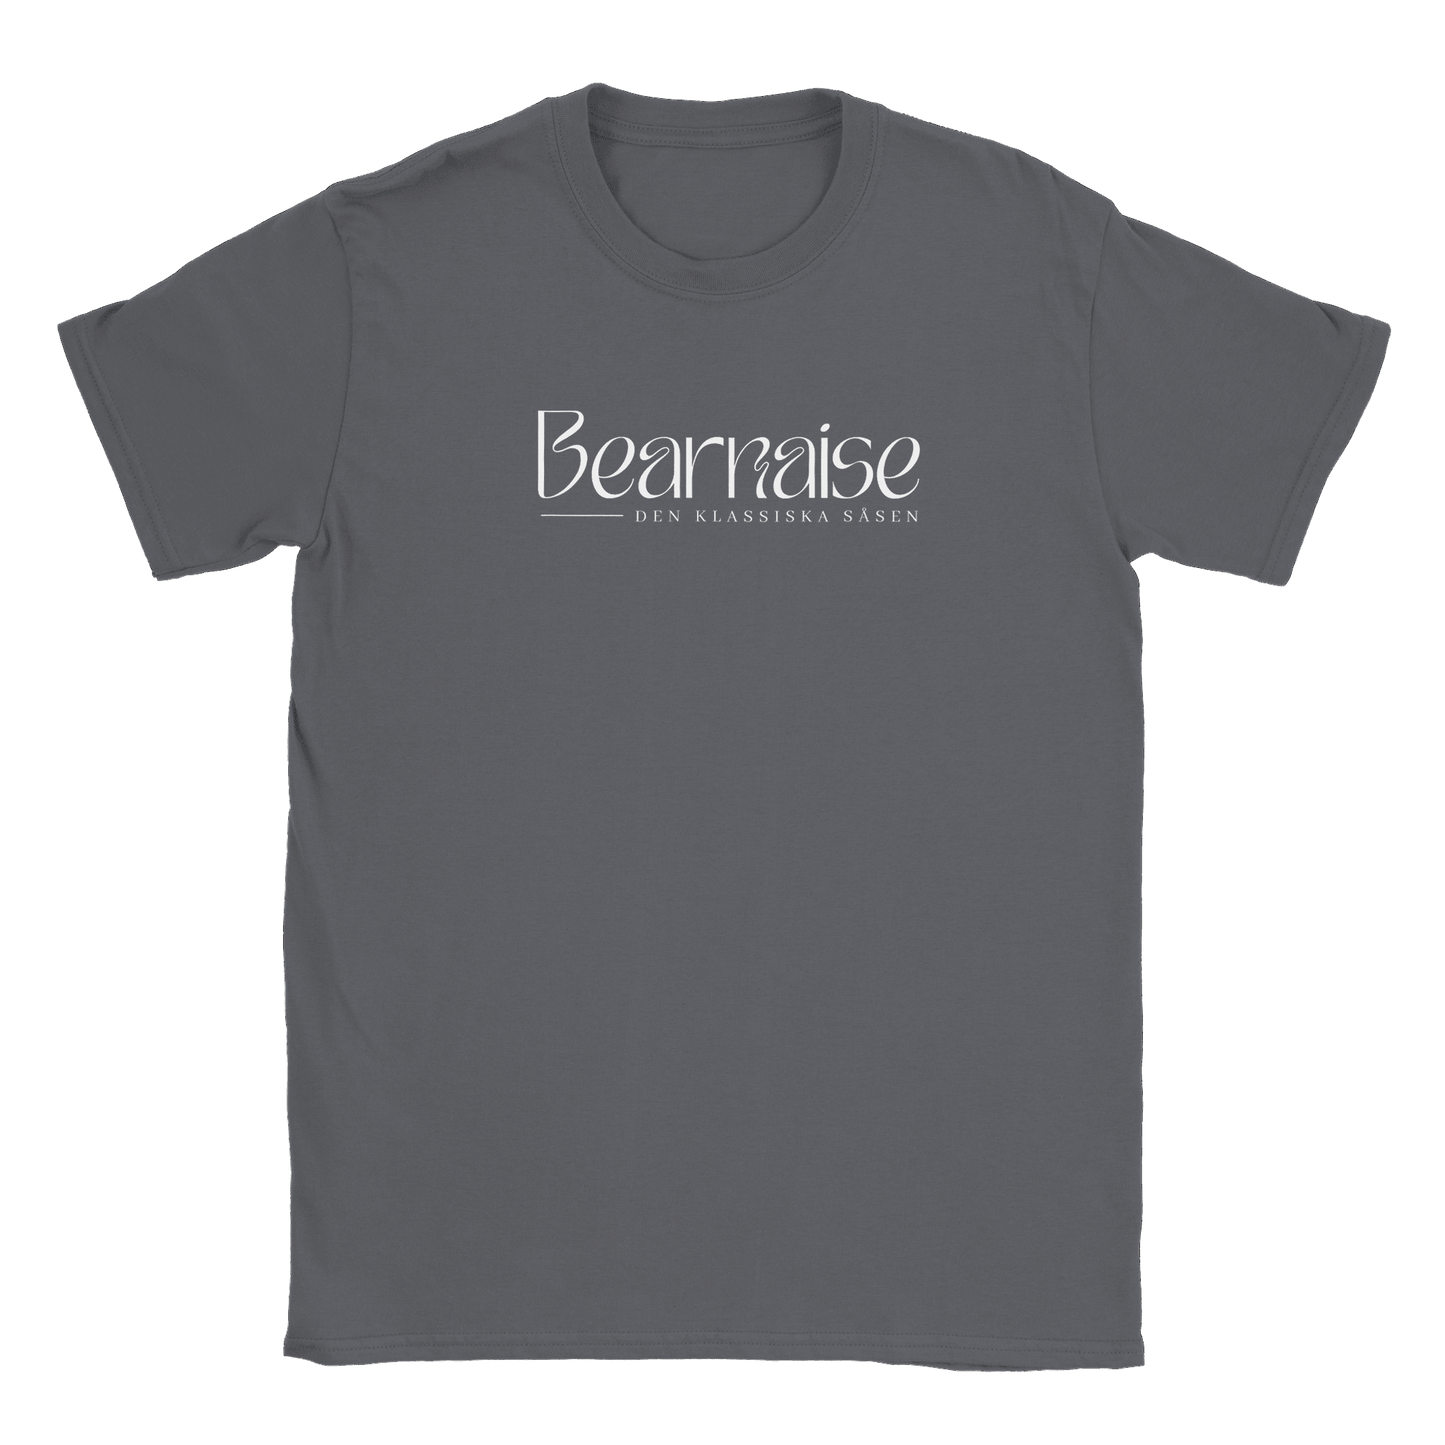 Bearnaisesås - T-shirt Charcoal